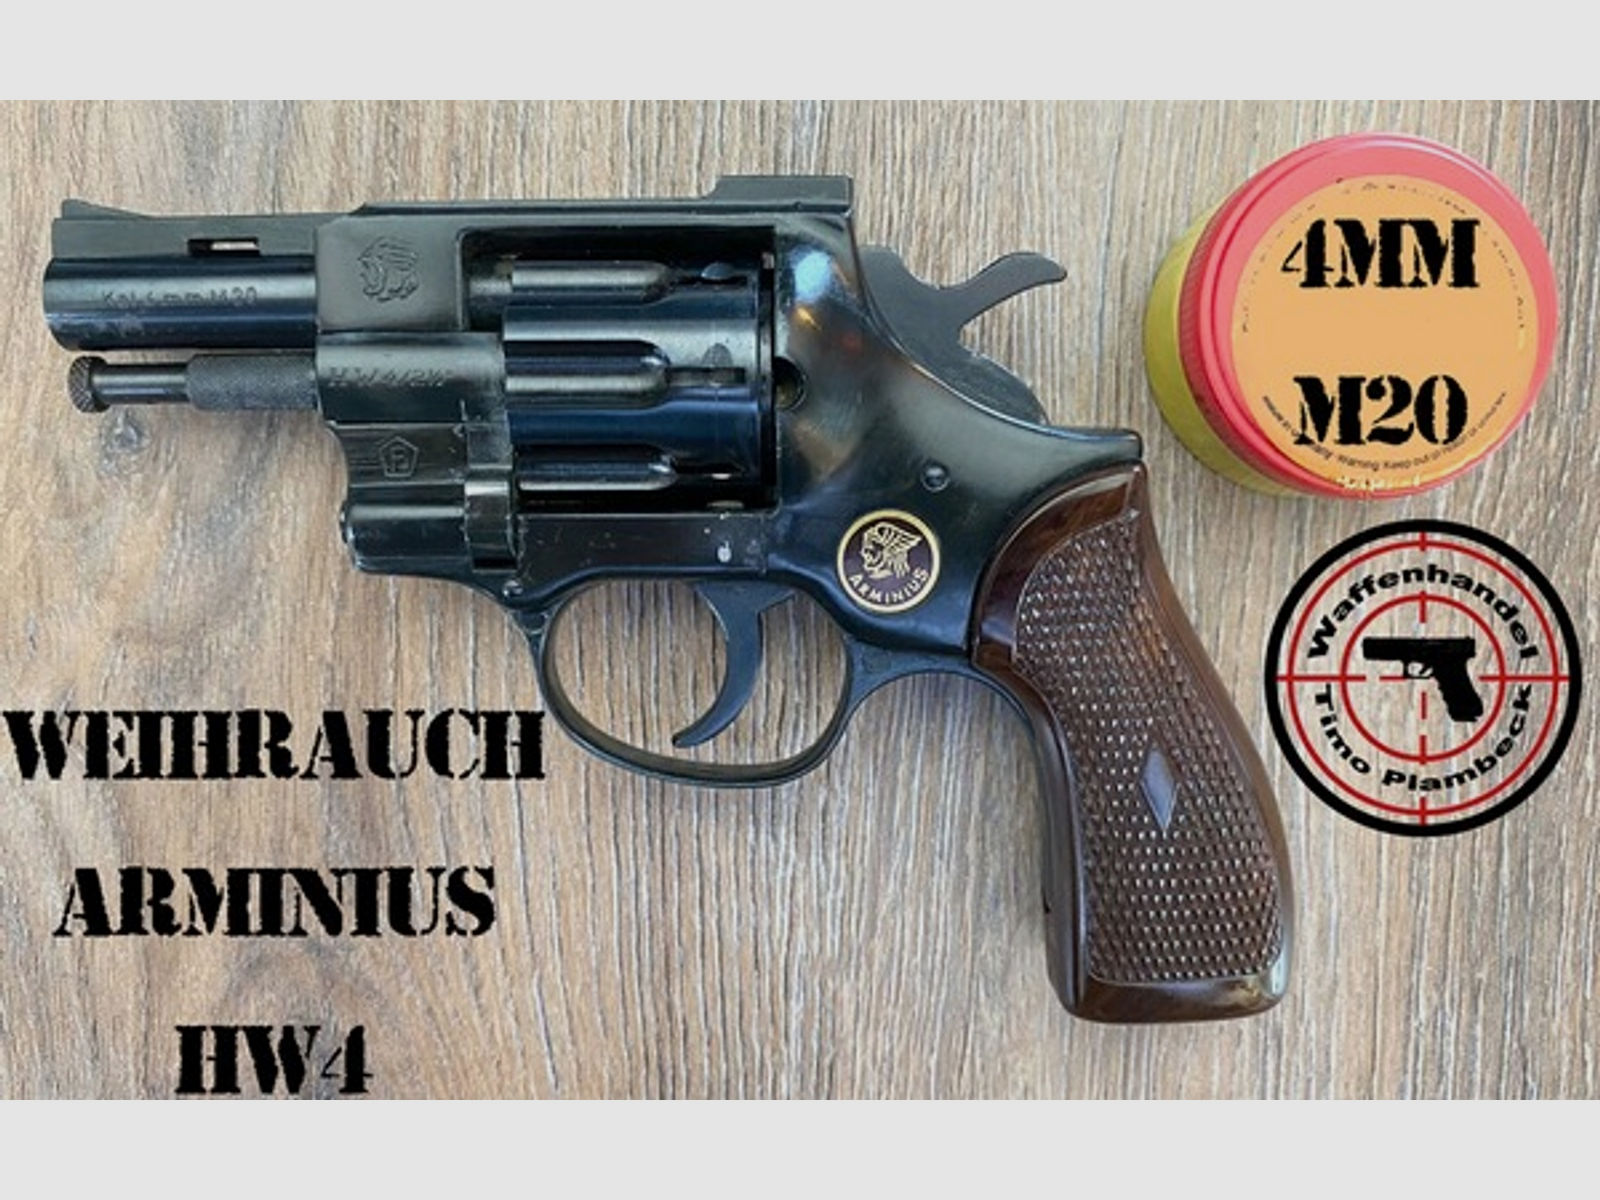 Revolver  Weihrauch Arminius HW4  im Kaliber 4mmM20 - erwerbscheinpflichtig, aber bedürfnisfrei!